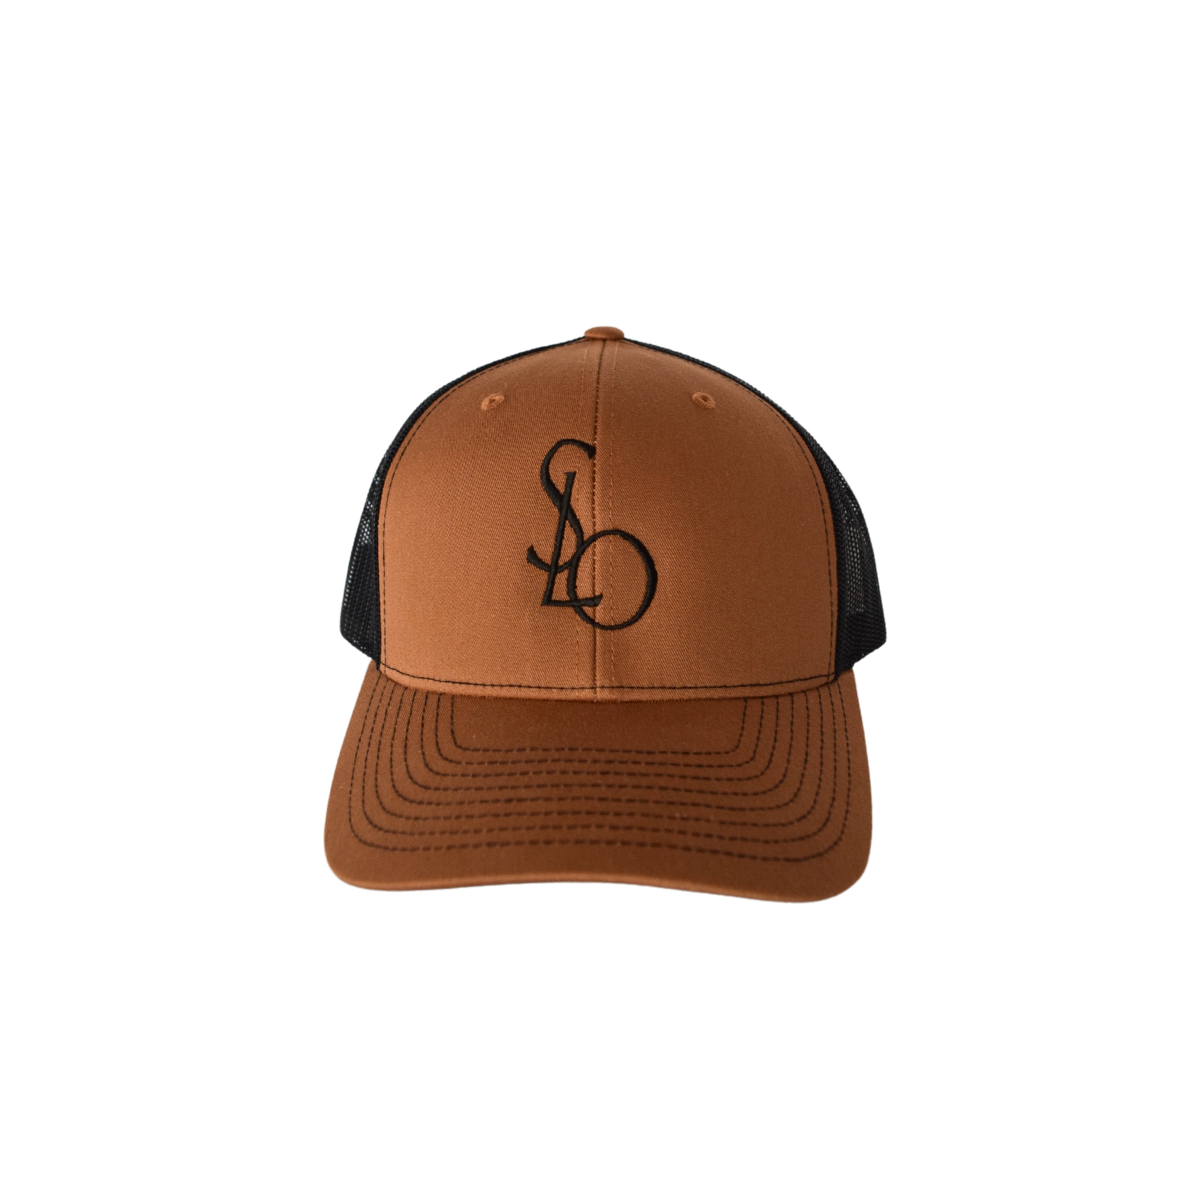 Branded SLO Designer-Inspired Baseball Hat in Caramel & Black